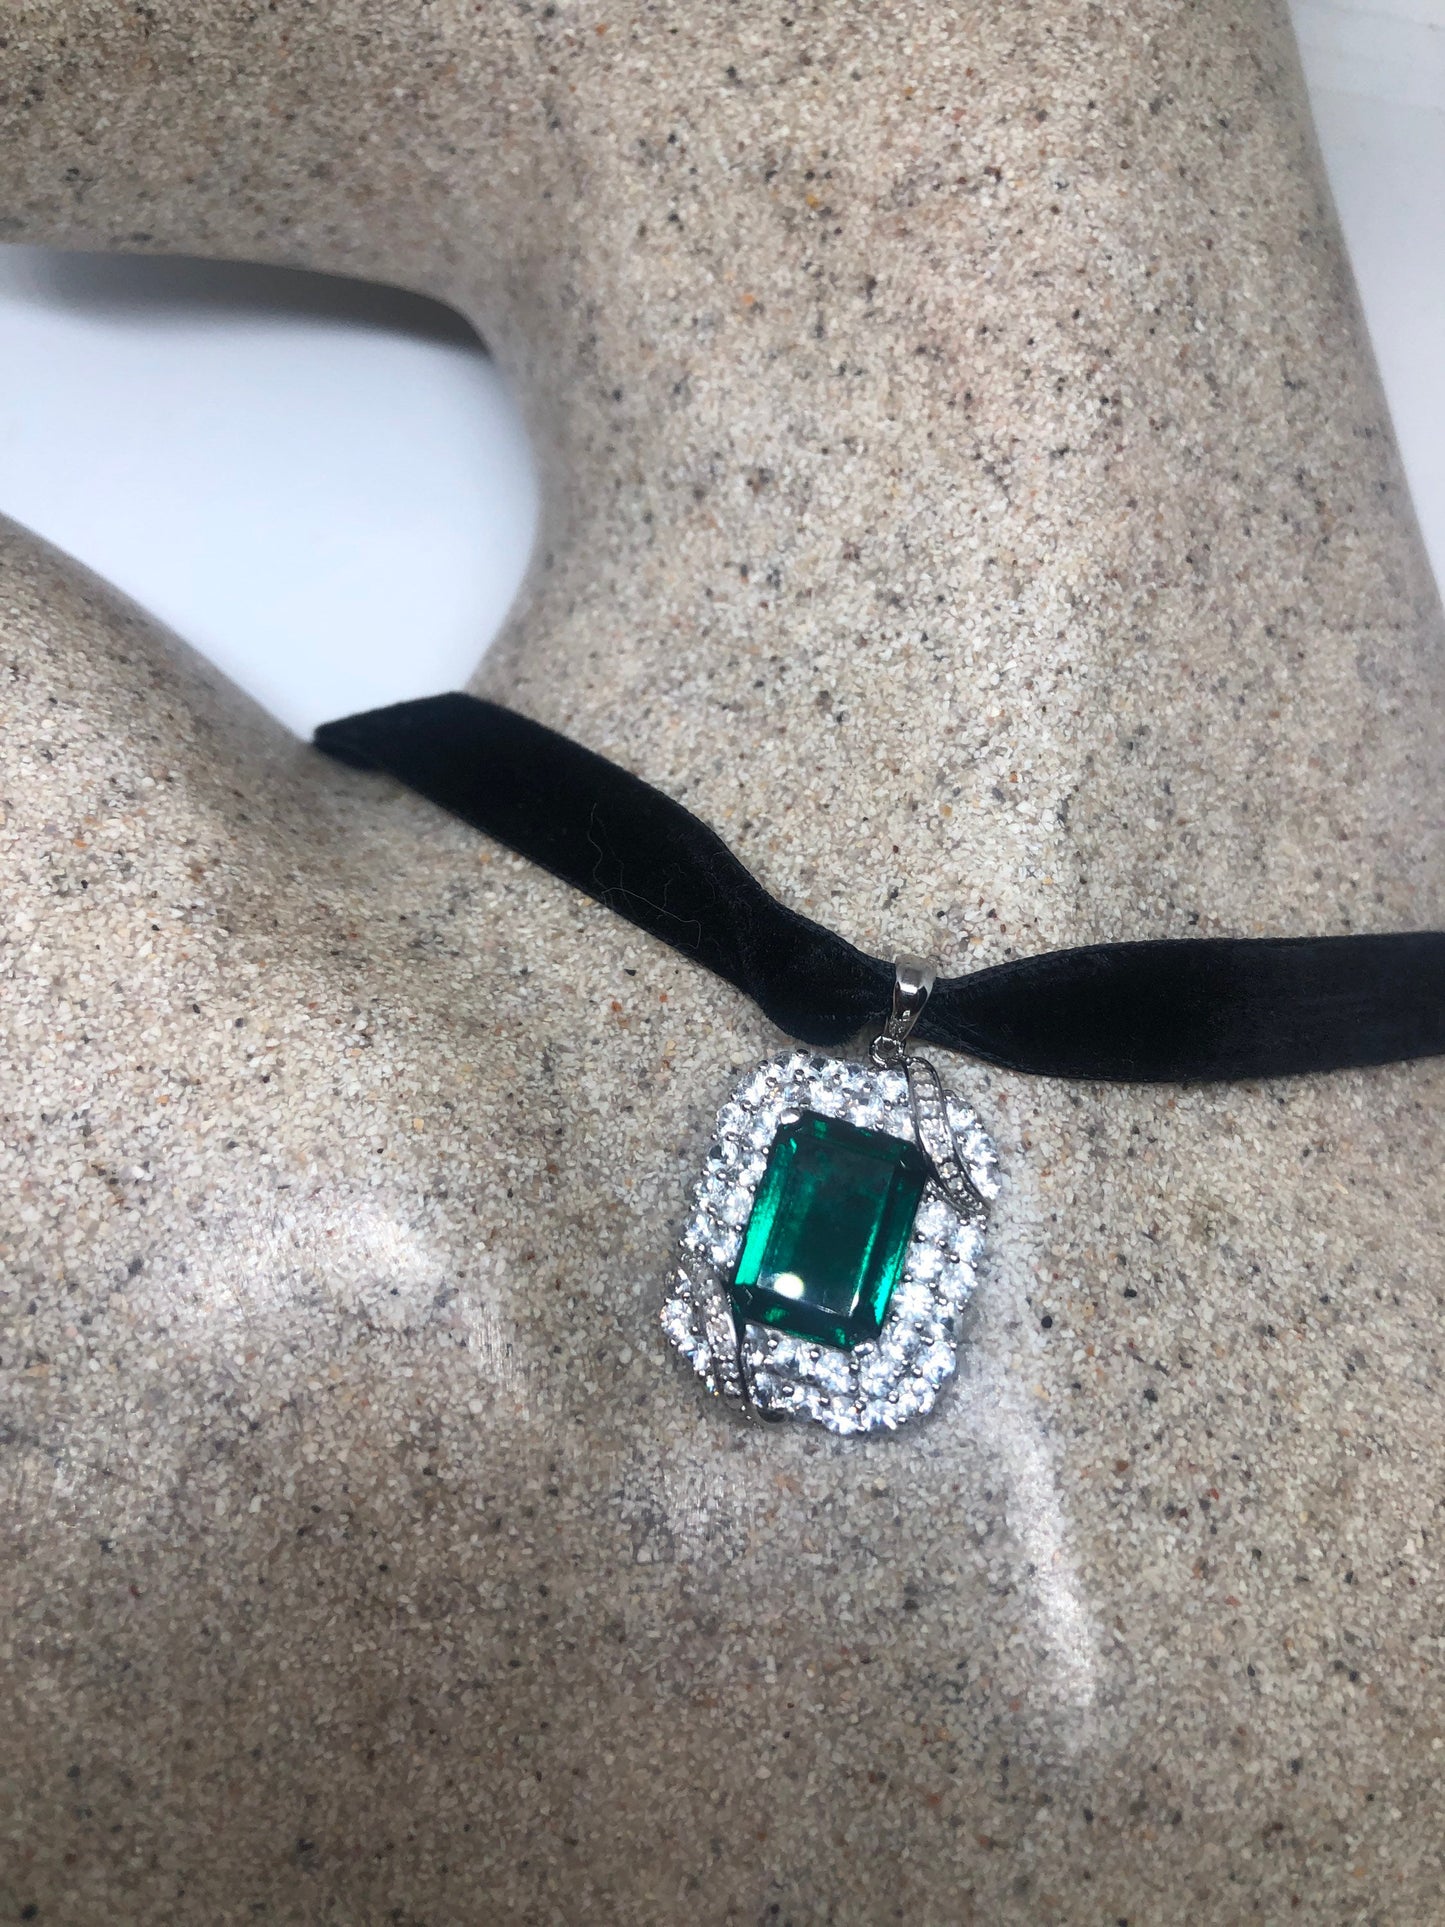 Vintage Silver Genuine Green Fluorite Gemstone Necklace.